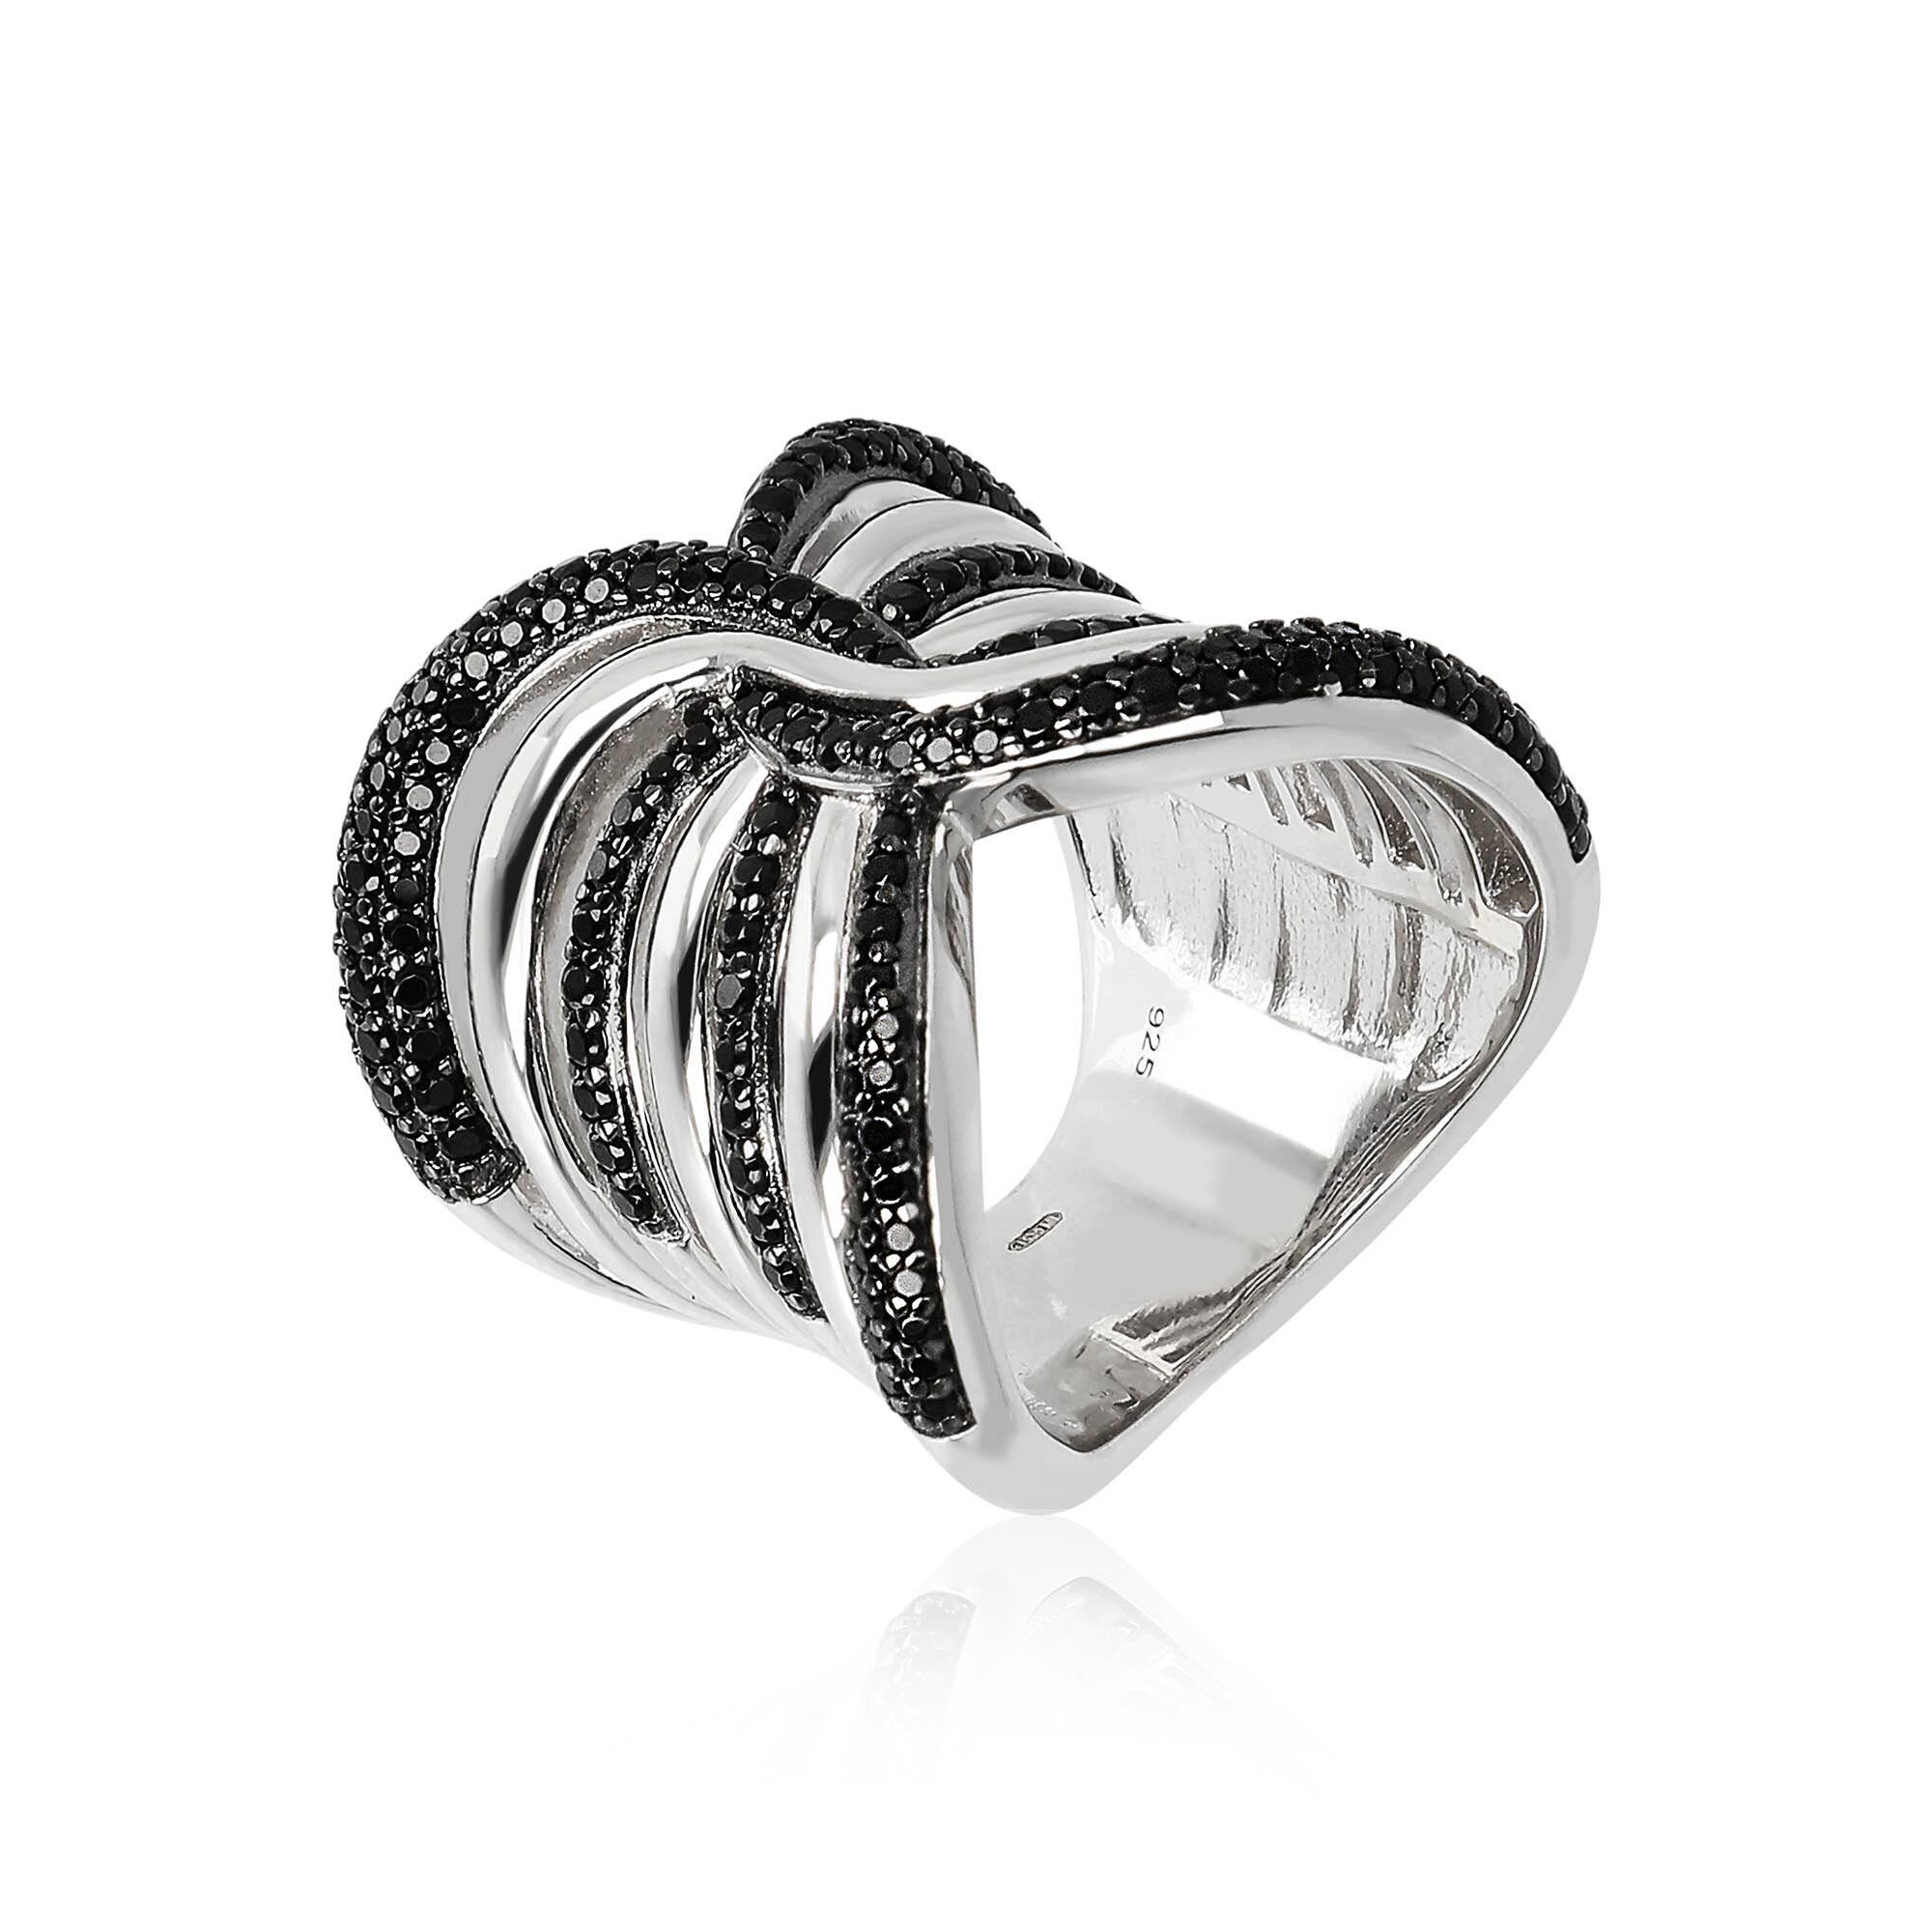 Anello argento 925 design intrecciato con spinelli neri